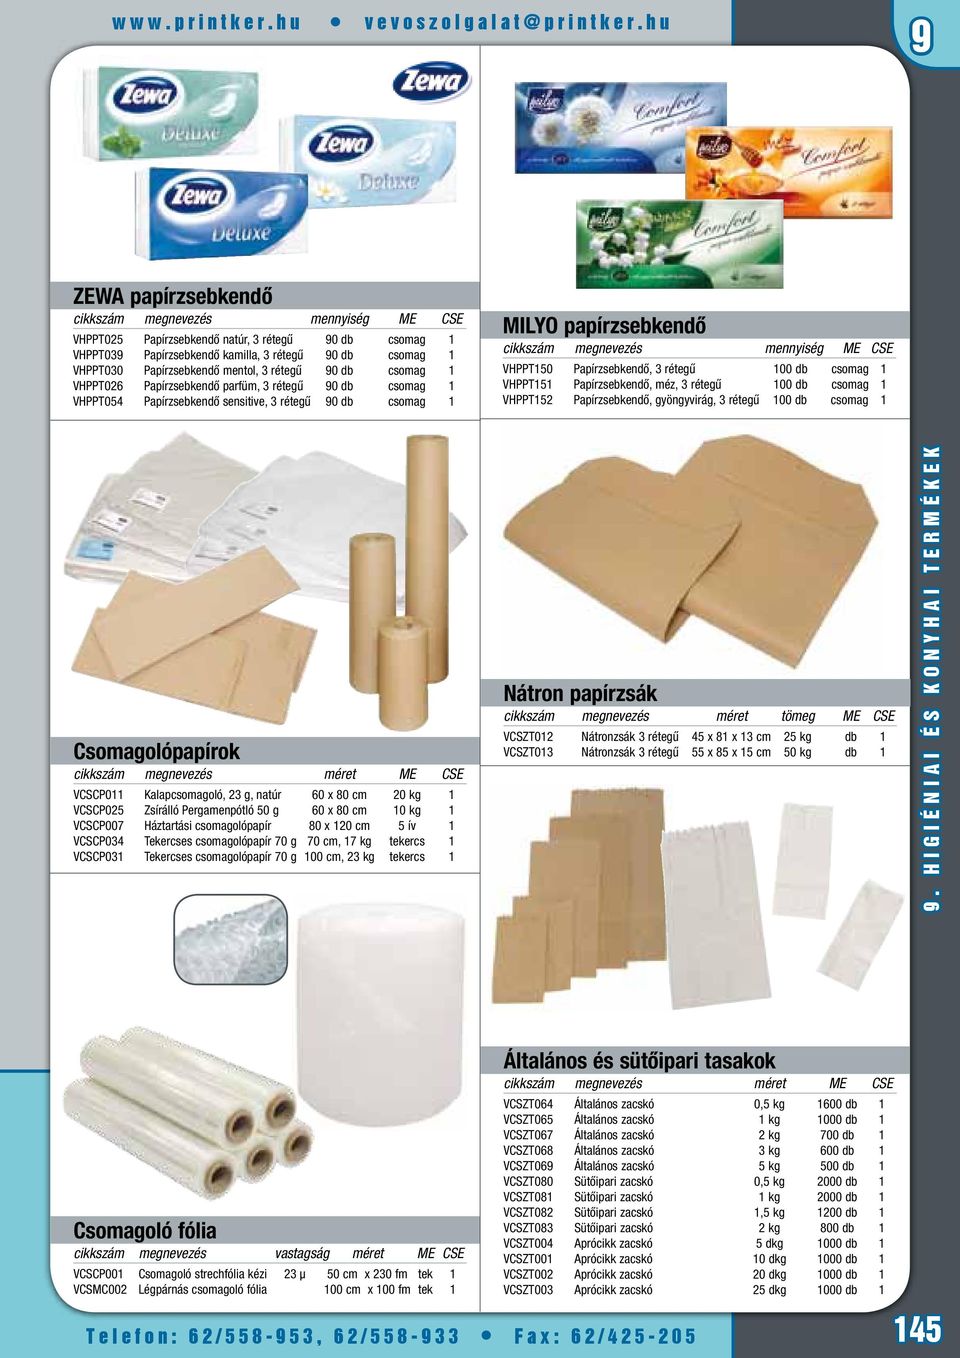 Papírzsebkendő mentol, 3 rétegű 90 db csomag 1 VHPPT026 Papírzsebkendő parfüm, 3 rétegű 90 db csomag 1 VHPPT054 Papírzsebkendő sensitive, 3 rétegű 90 db csomag 1 MILYO papírzsebkendő cikkszám